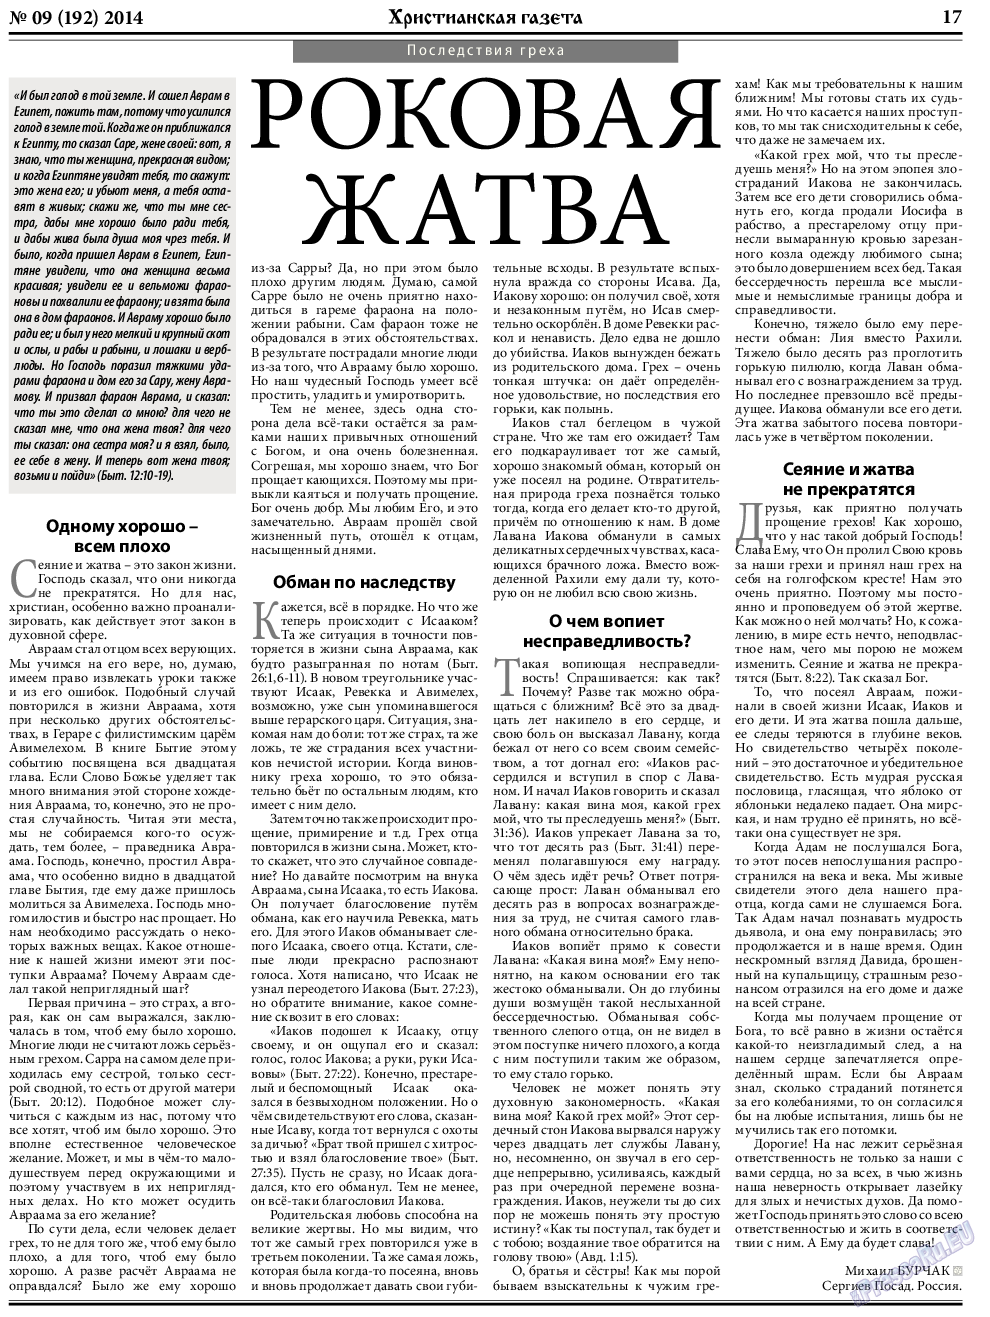 Христианская газета, газета. 2014 №9 стр.25